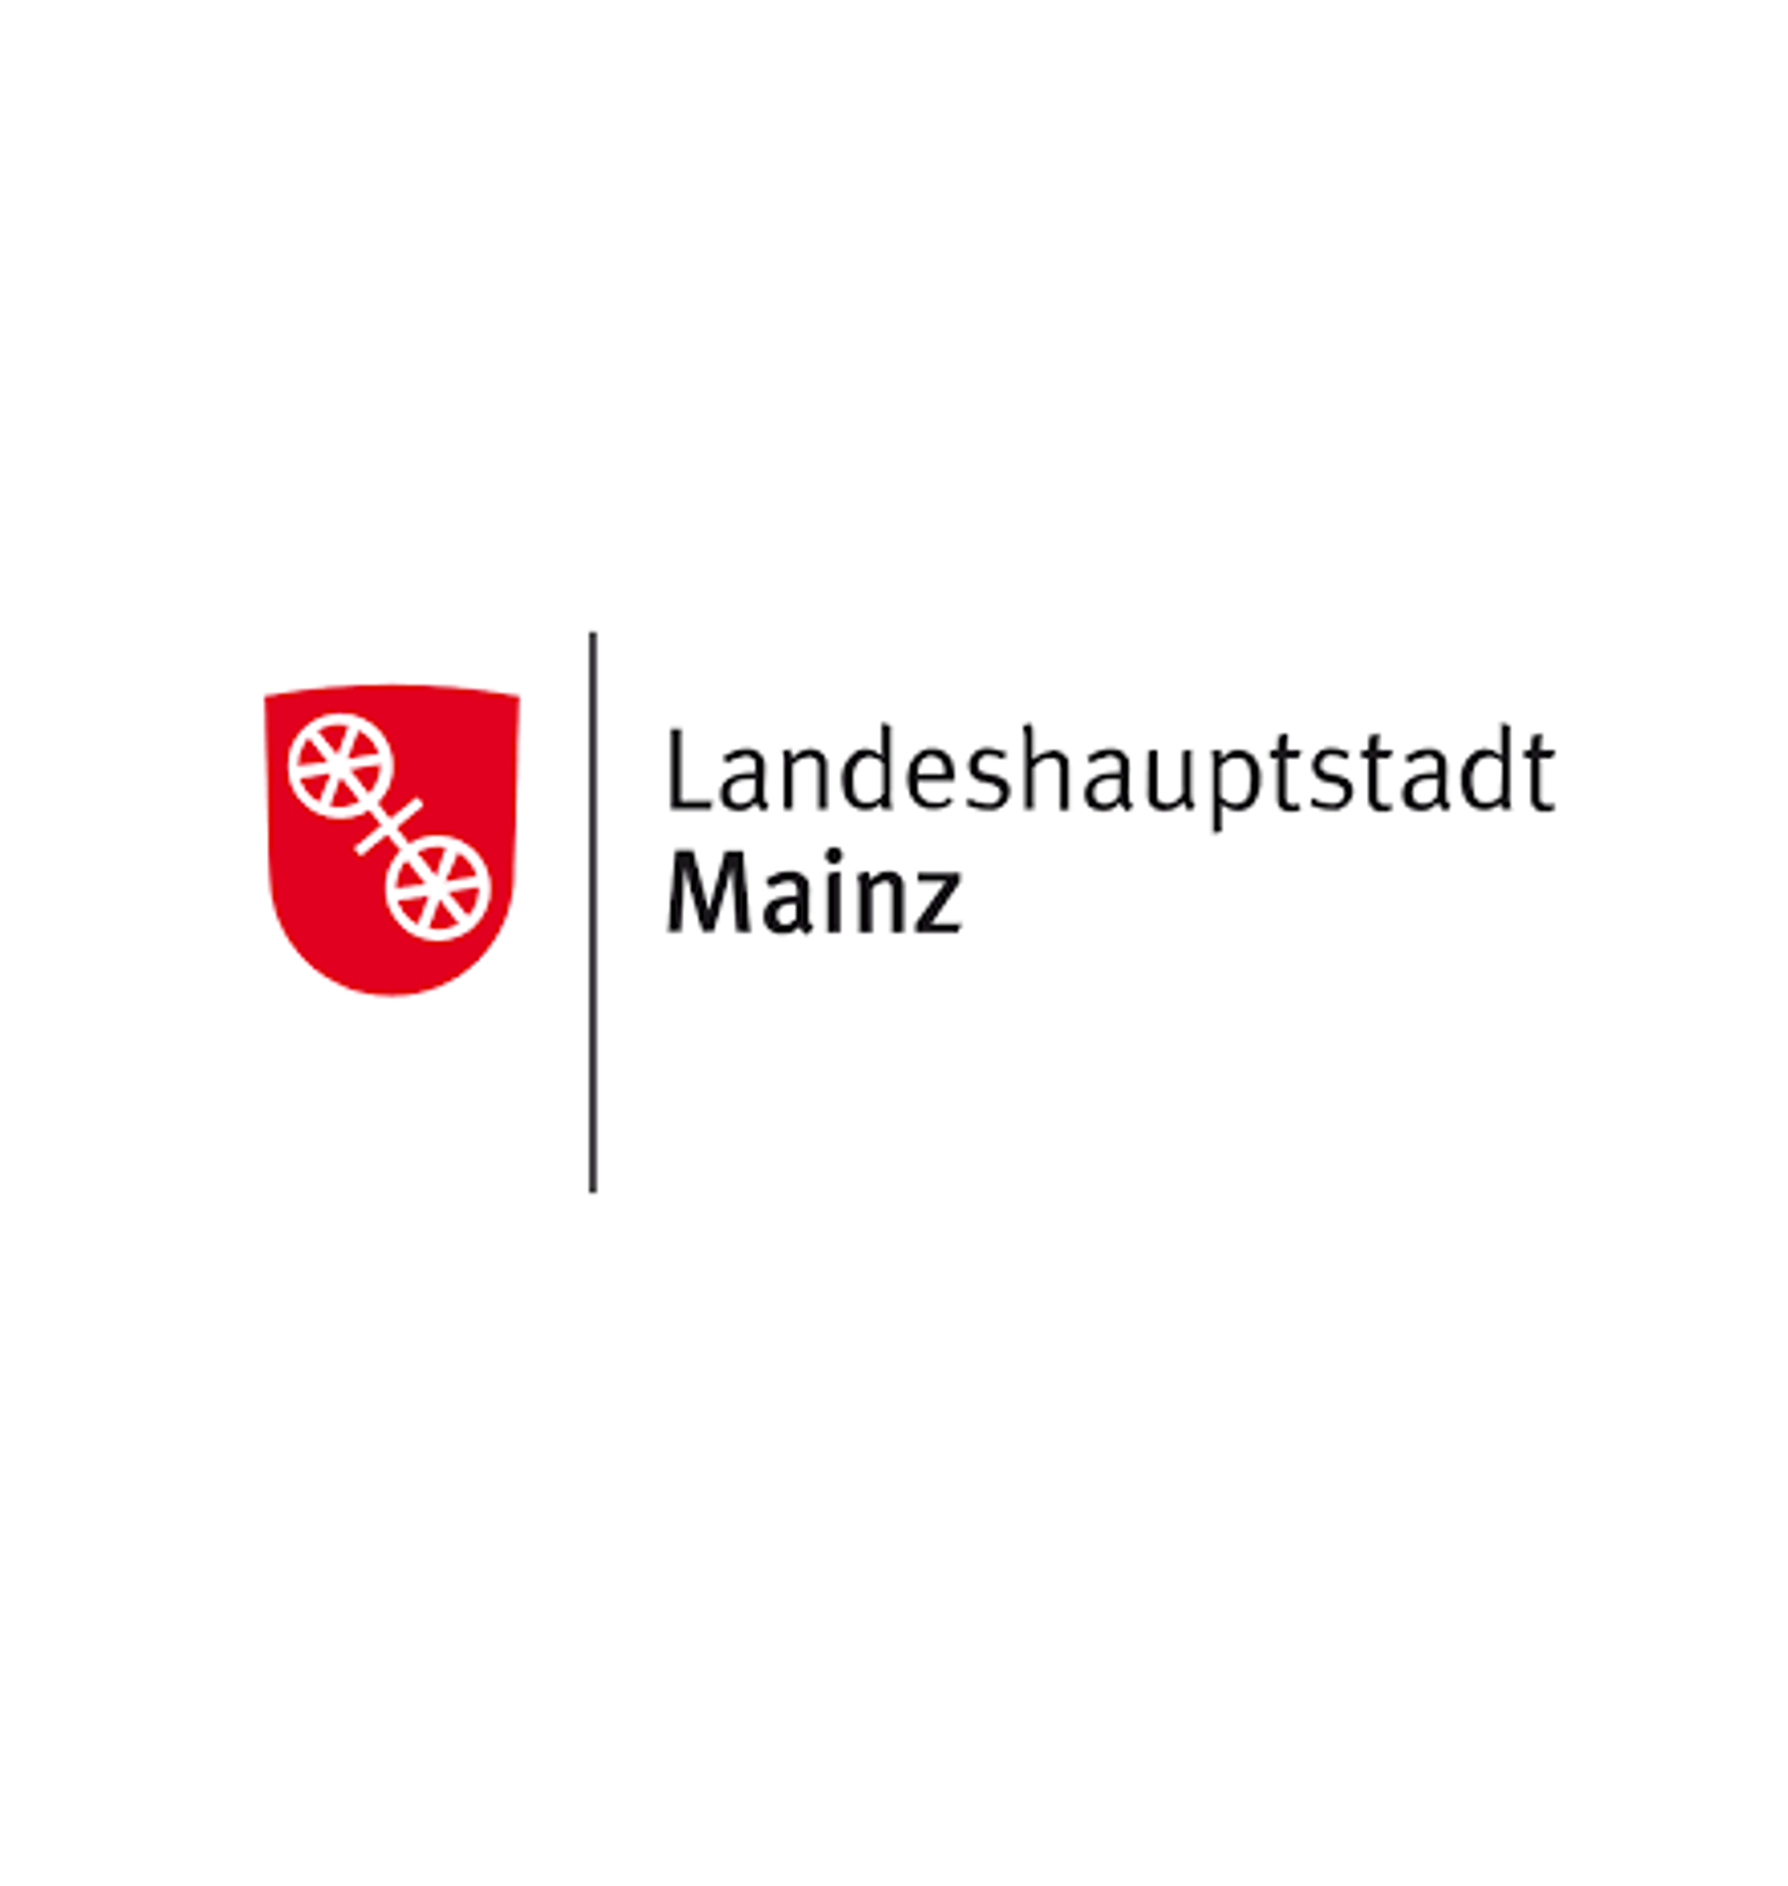 Landeshauptstadt Mainz